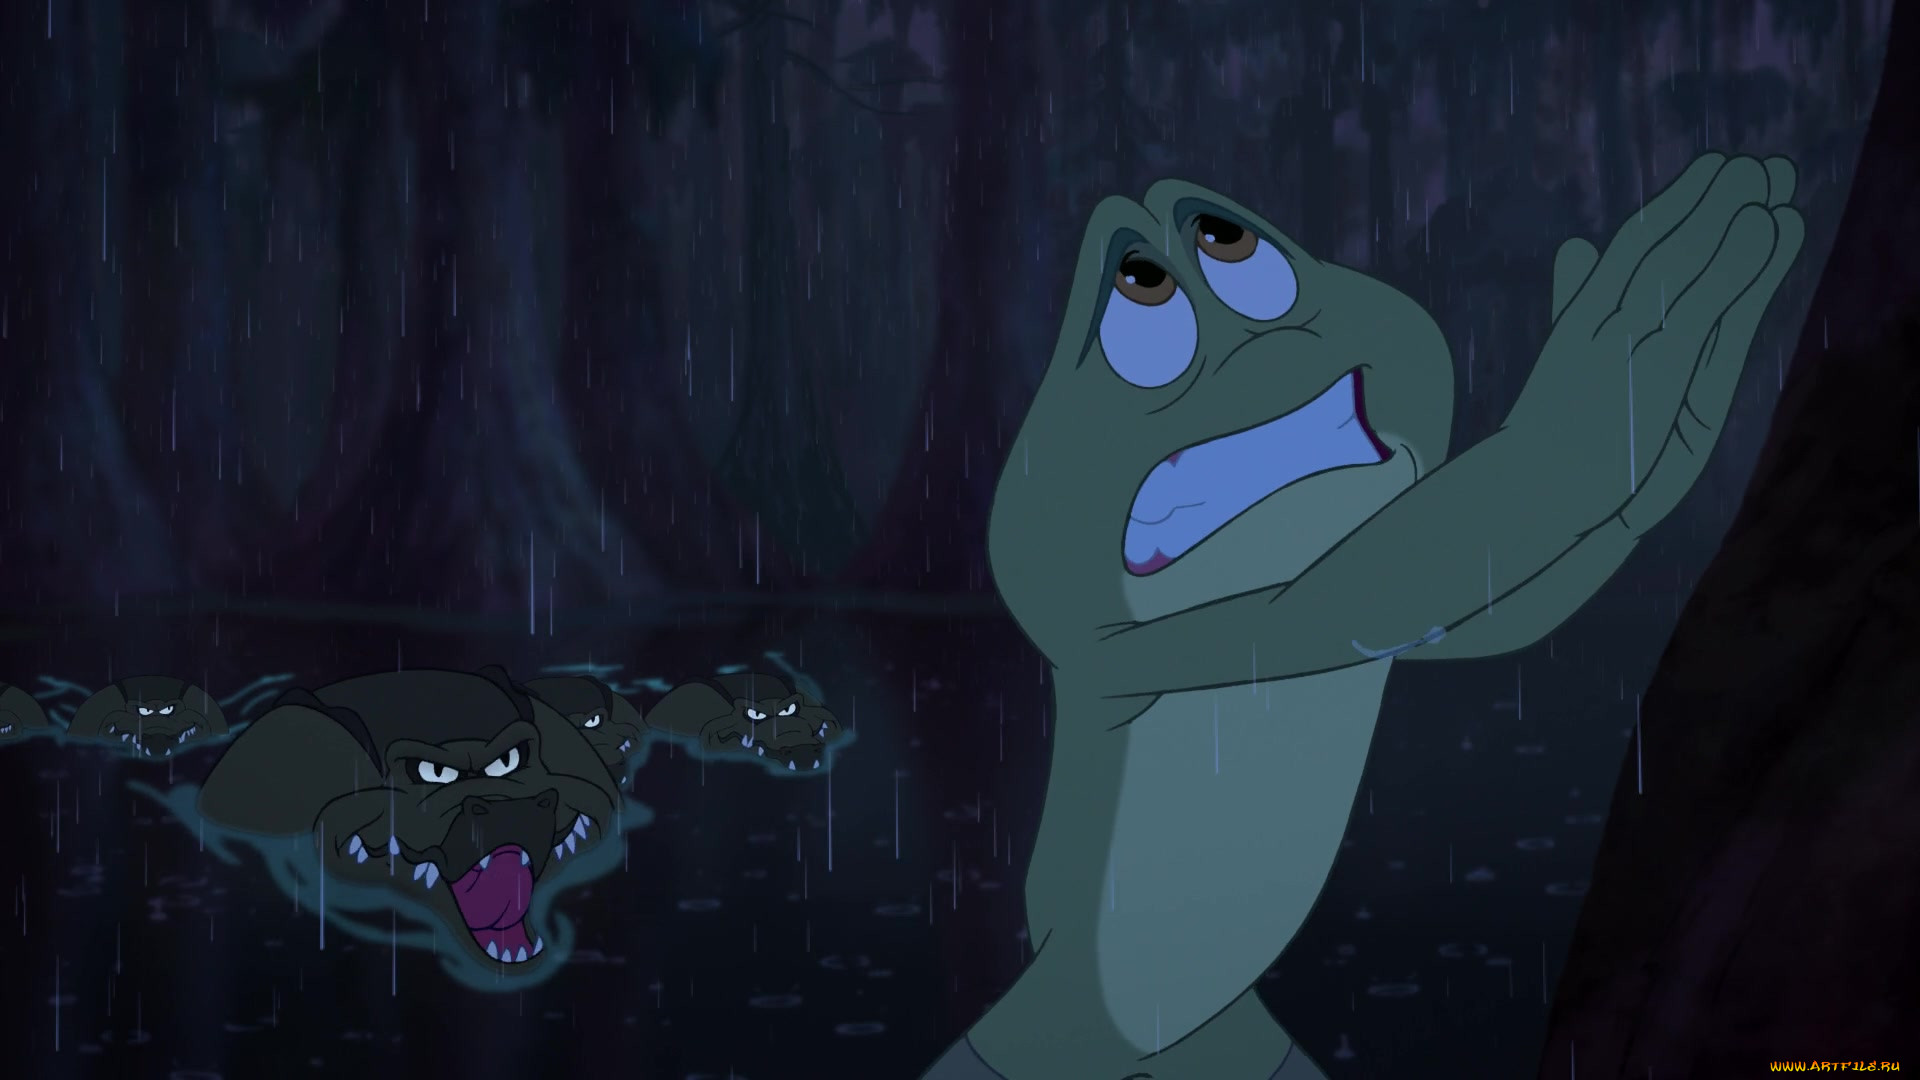 Принцесса и лягушка мультфильм 2009 крокодил